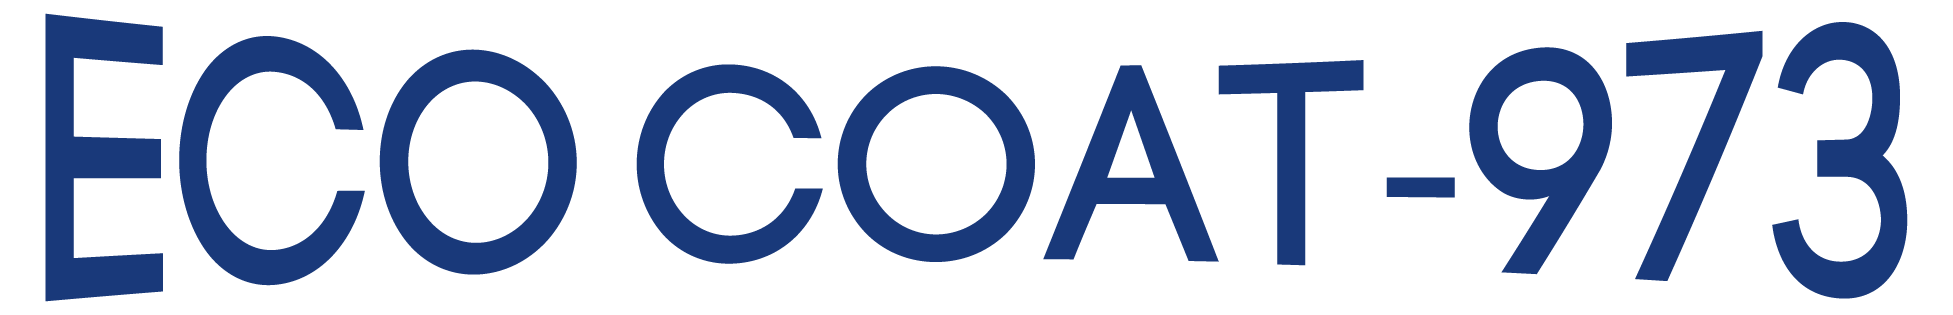 Ecocoat 973 Blue Logo